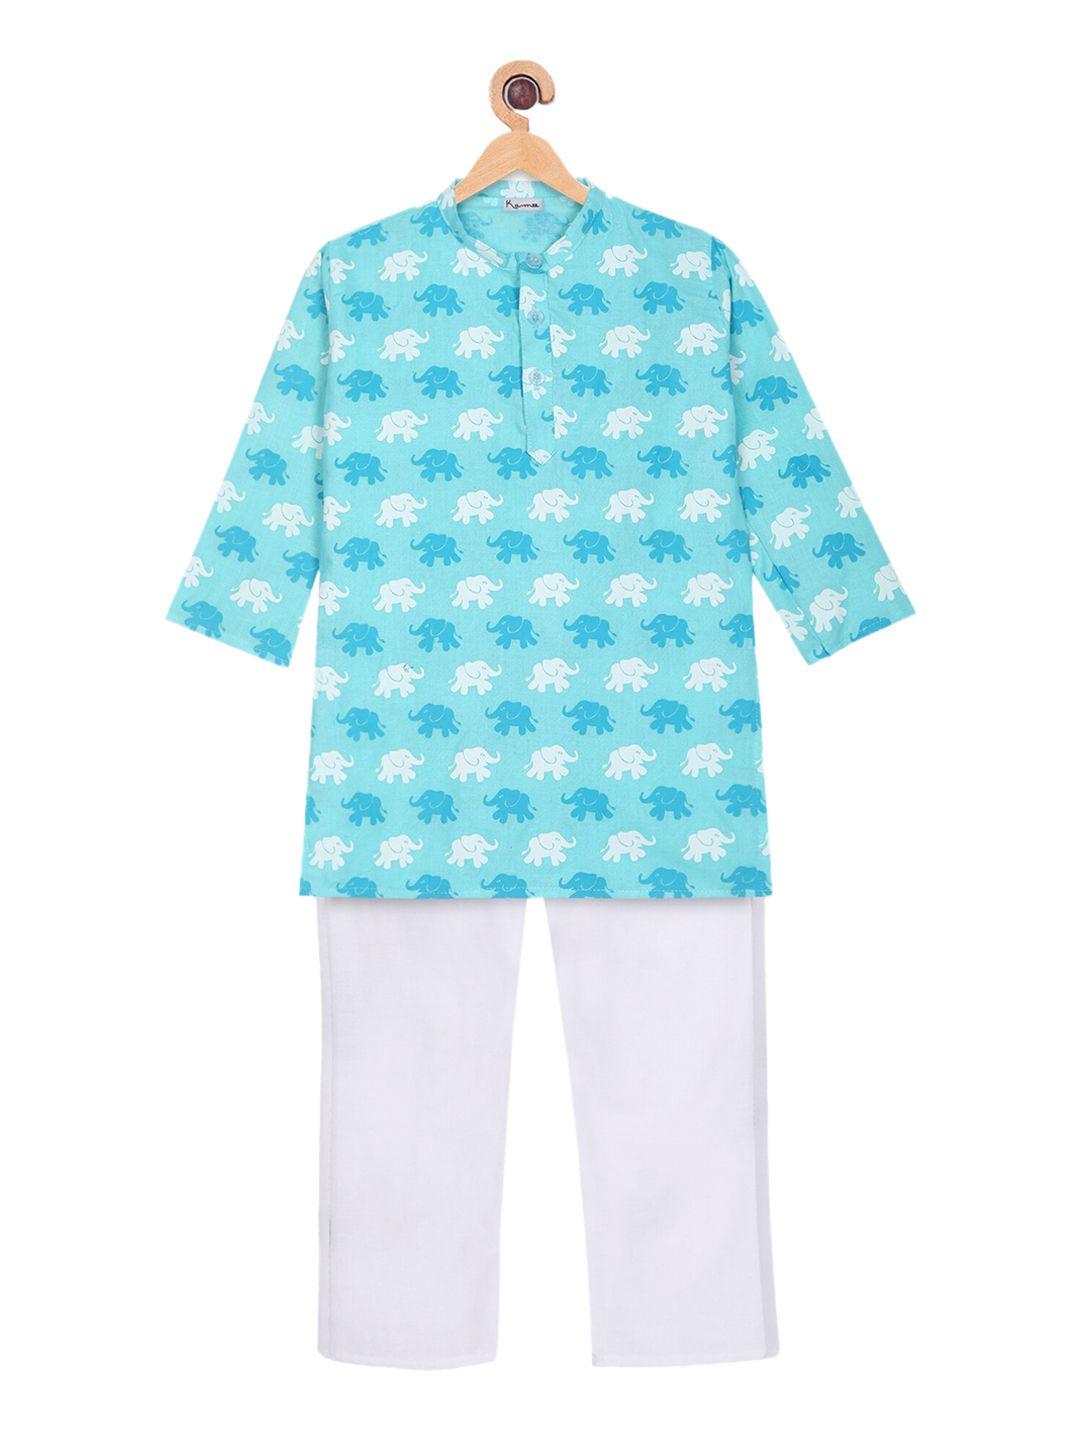 ka-mee boys blue printed pure cotton kurta with pyjamas